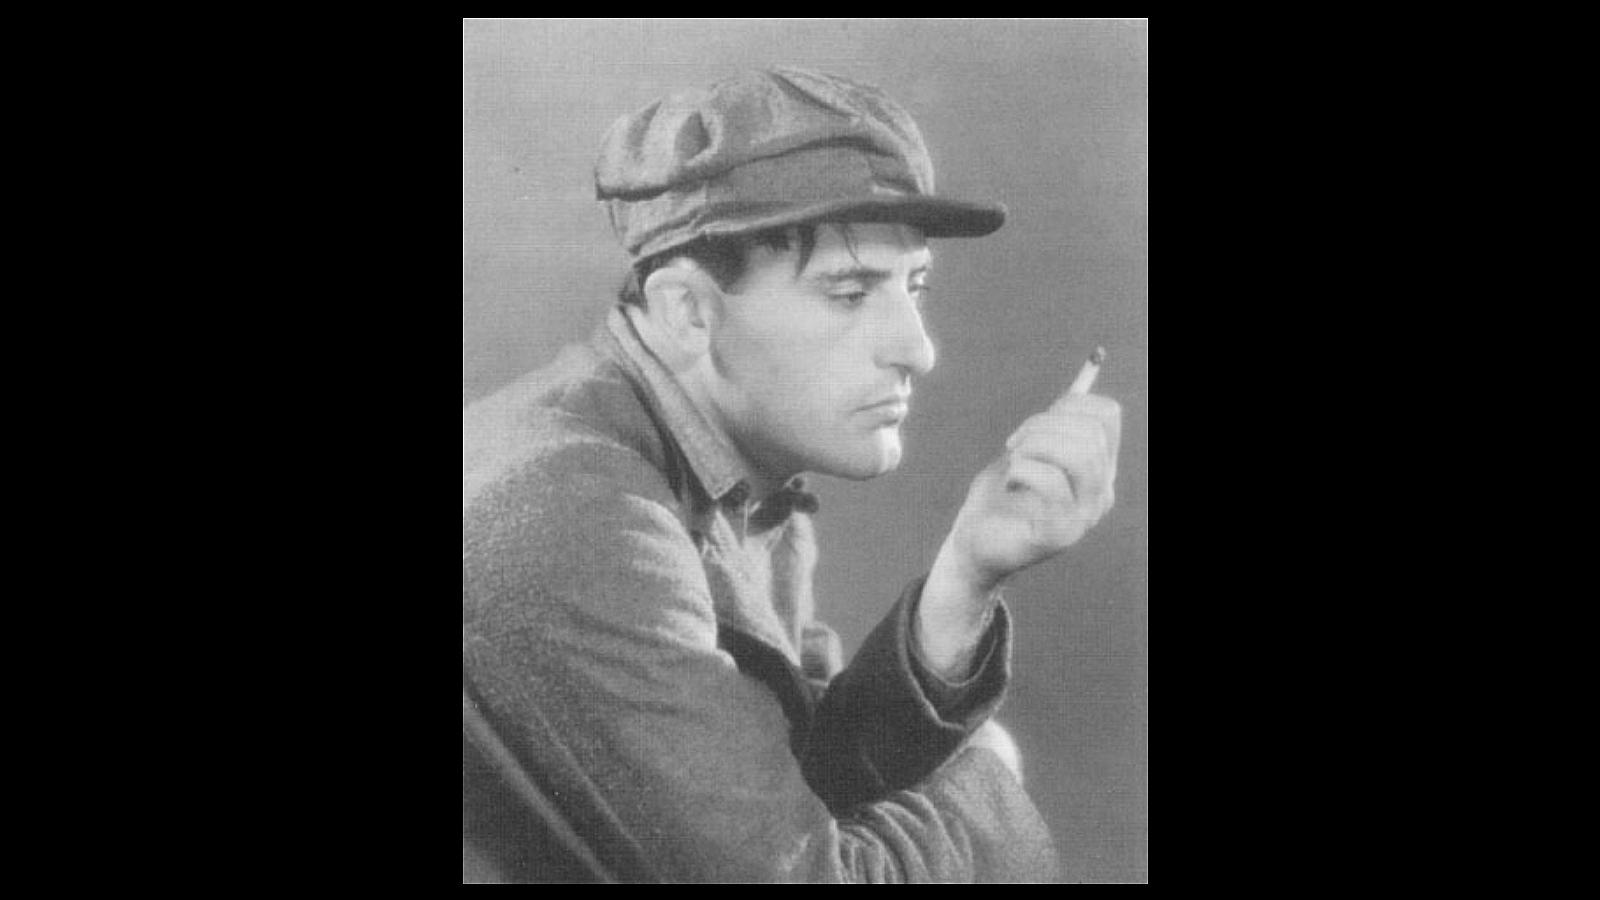 El murciano José Crespo fue otro de los actores que triunfó en Hollywood. Comenzó consiguiendo papeles en películas de United Artists, Fox o la Metro. Del cine mudo pasó al sonoro, donde también rodó importantes producciones e hizo amistad con actores como Chaplin, Dolores del Río, Gary Cooper o Douglas Fairbanks